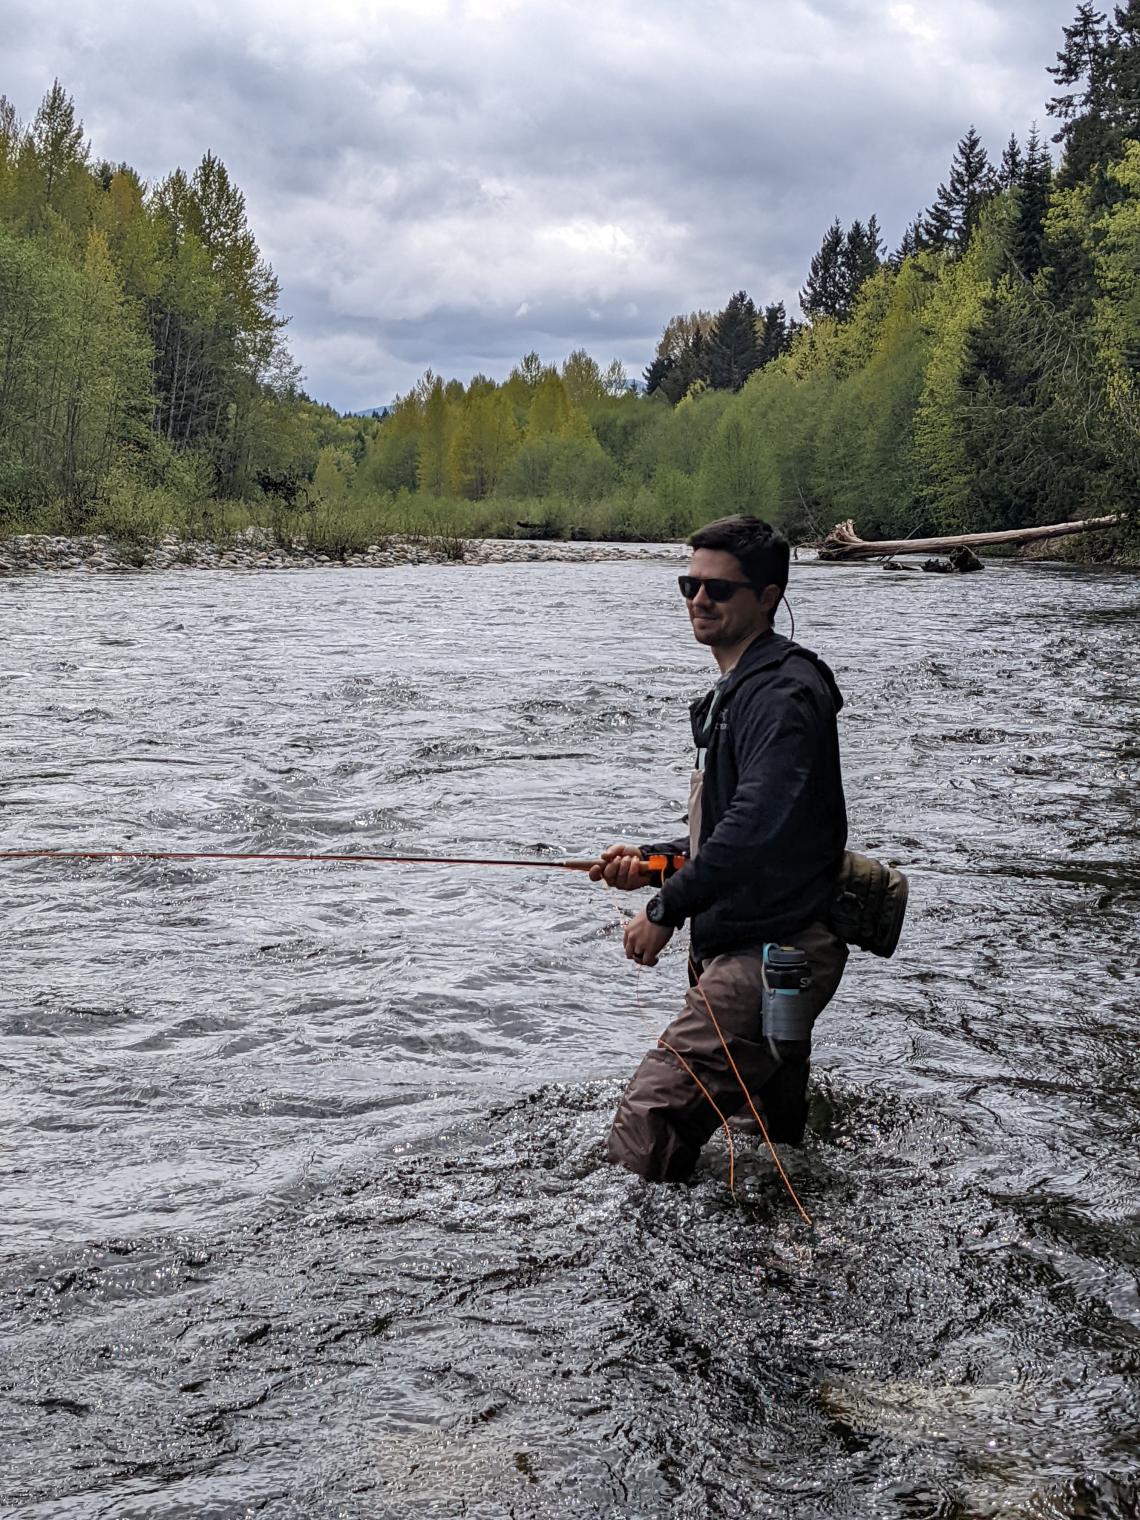 Joe Clark fishing in a river